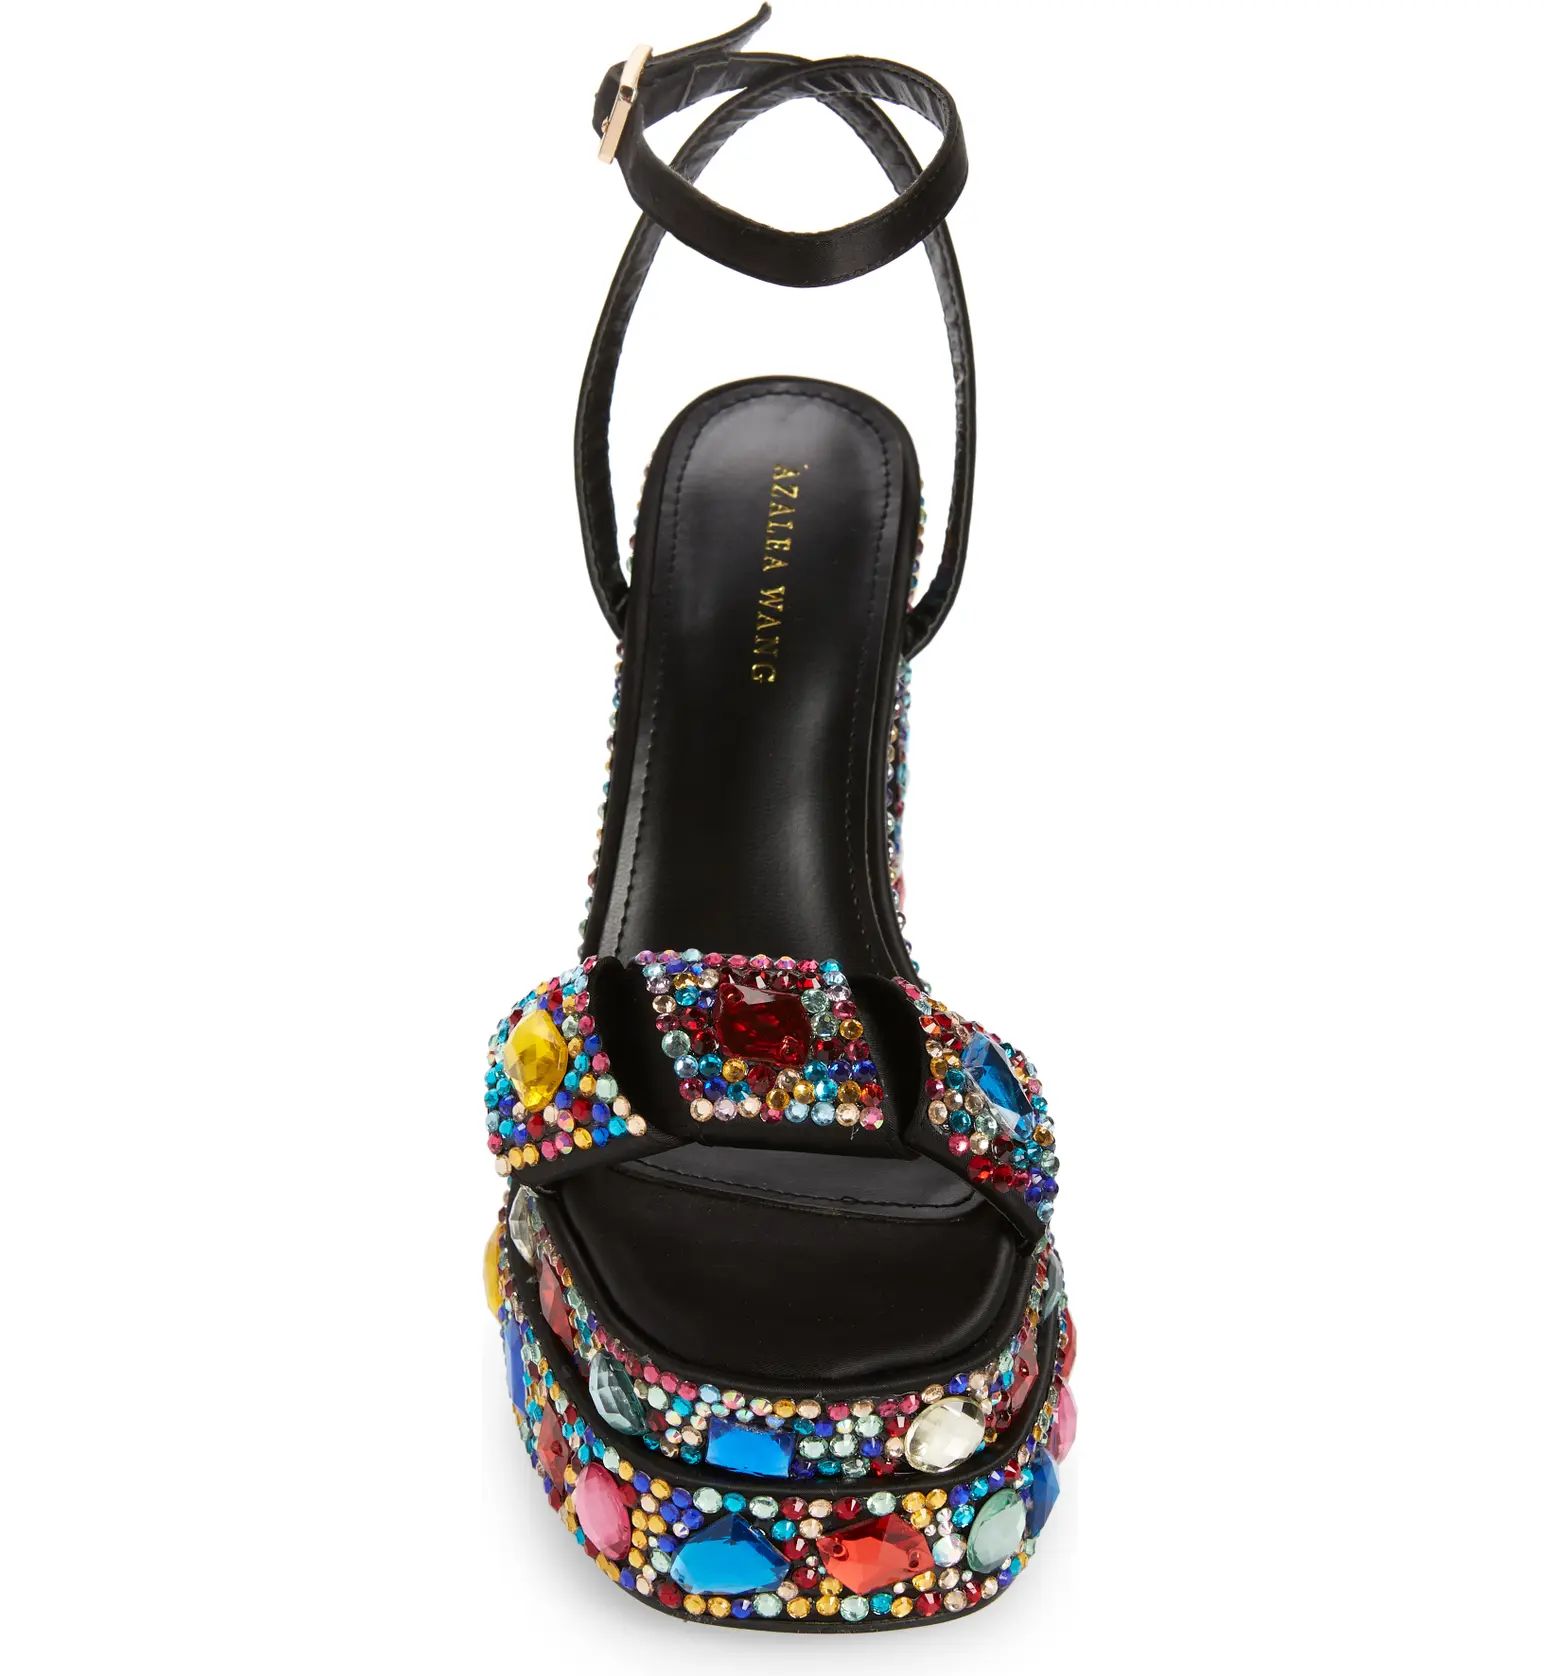 Janette Ankle Strap Crystal Platform Sandal (Women) | Nordstrom